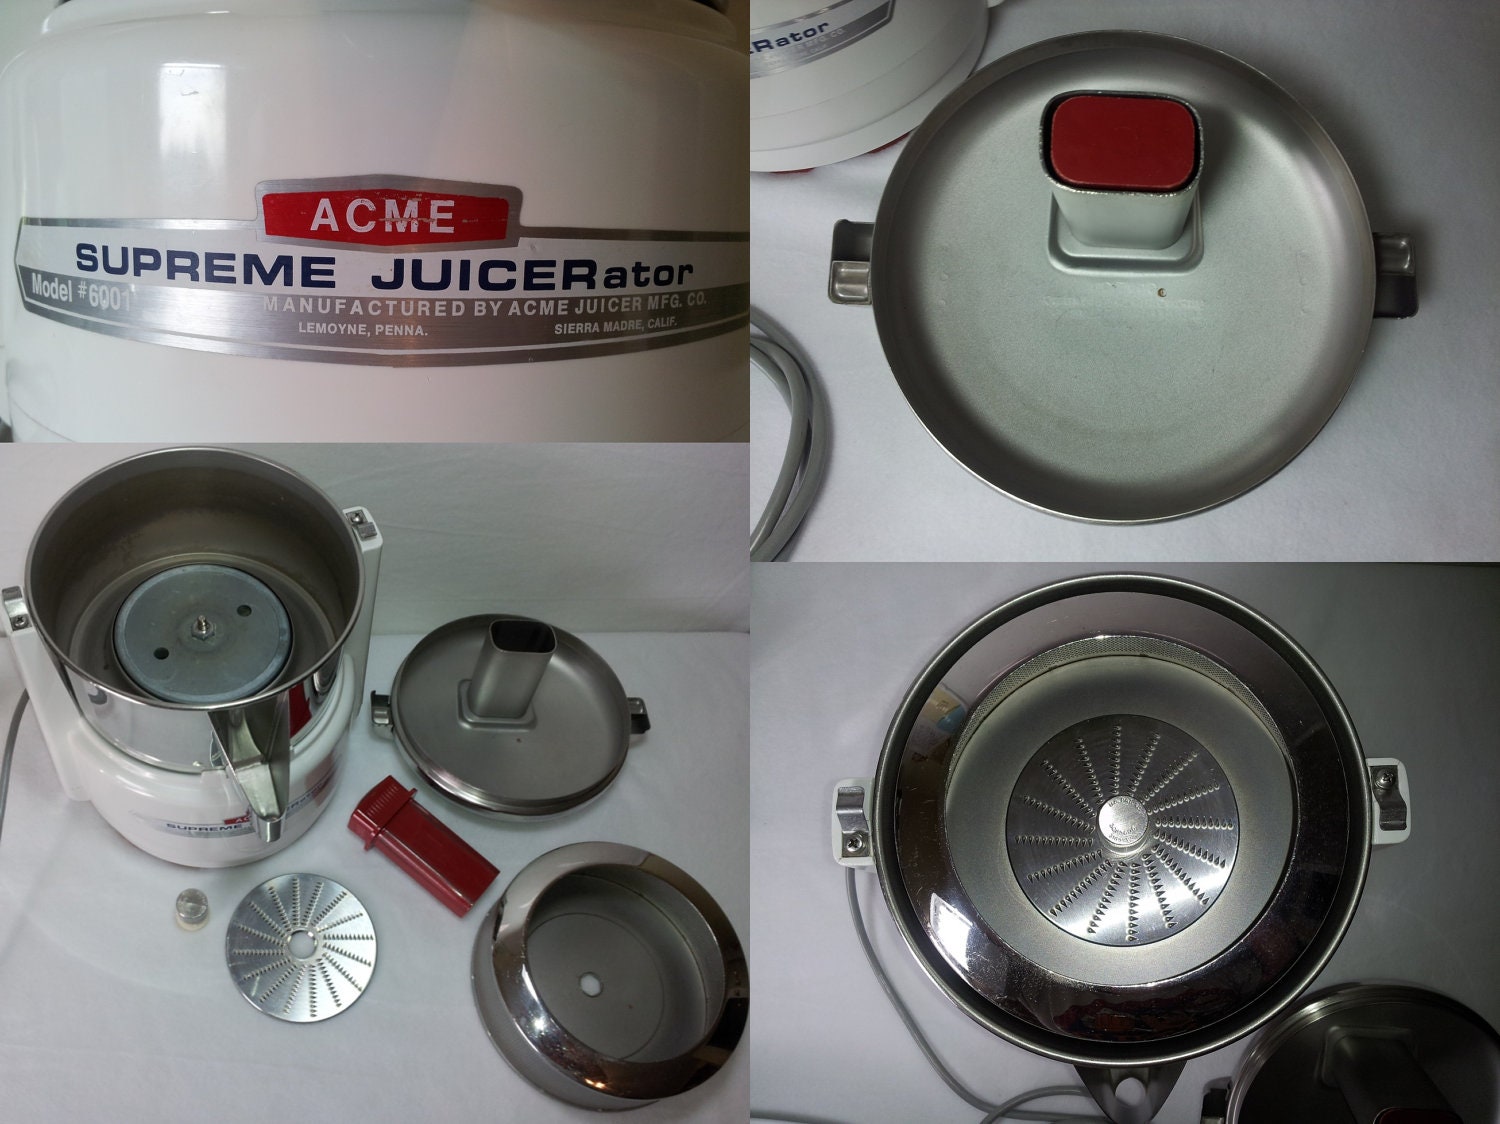 ACME Supreme Juicerator Model 6001 - Juicer